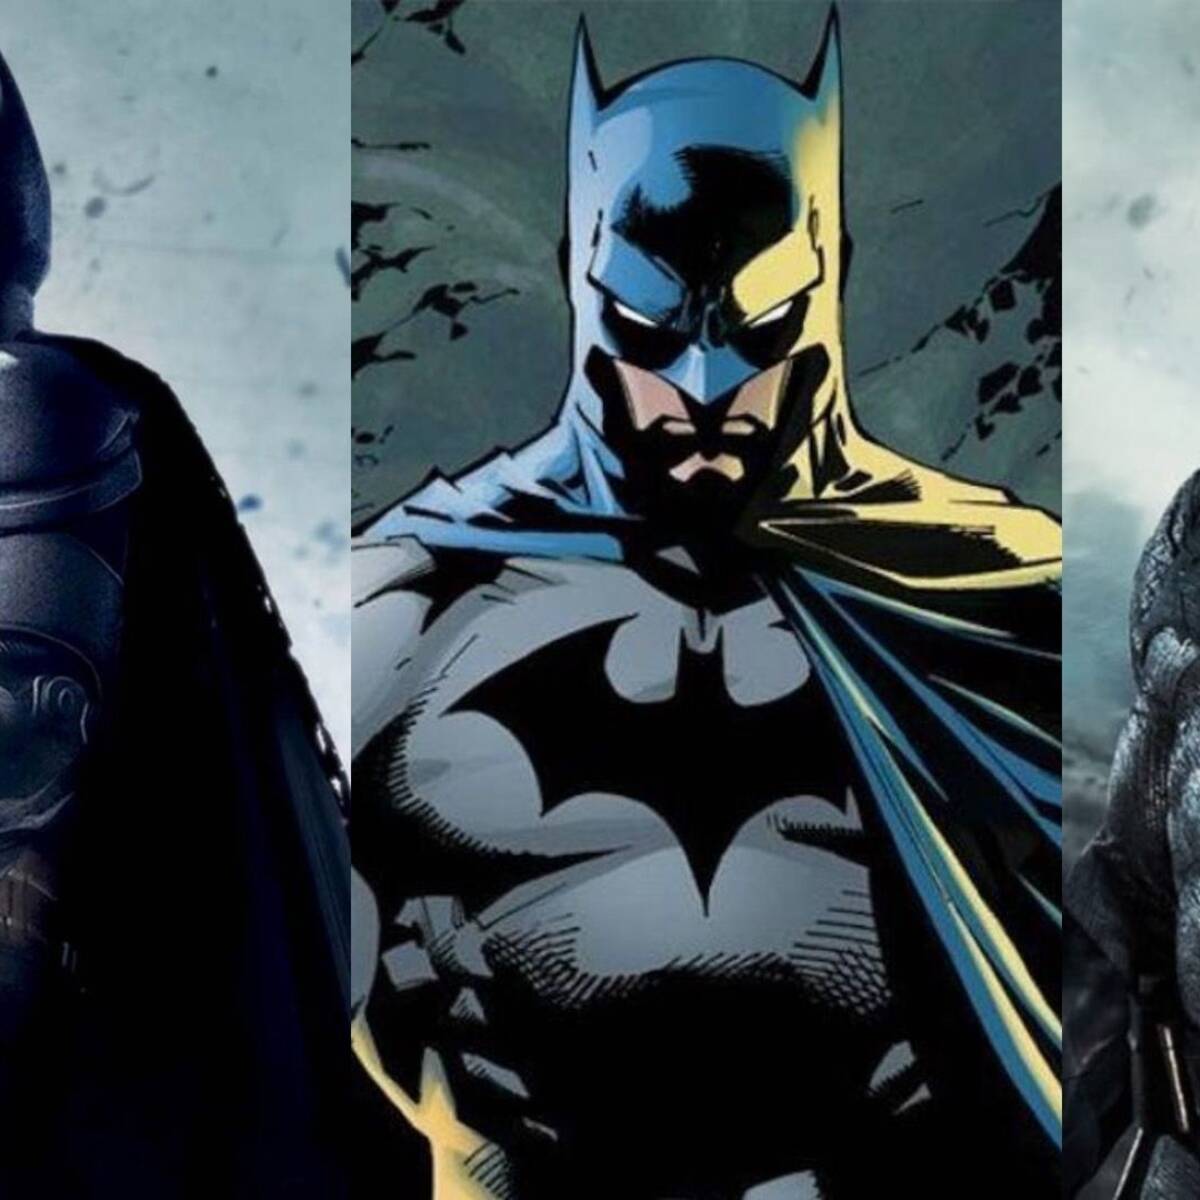 Las 10 mejores frases de Batman - Vandal Random